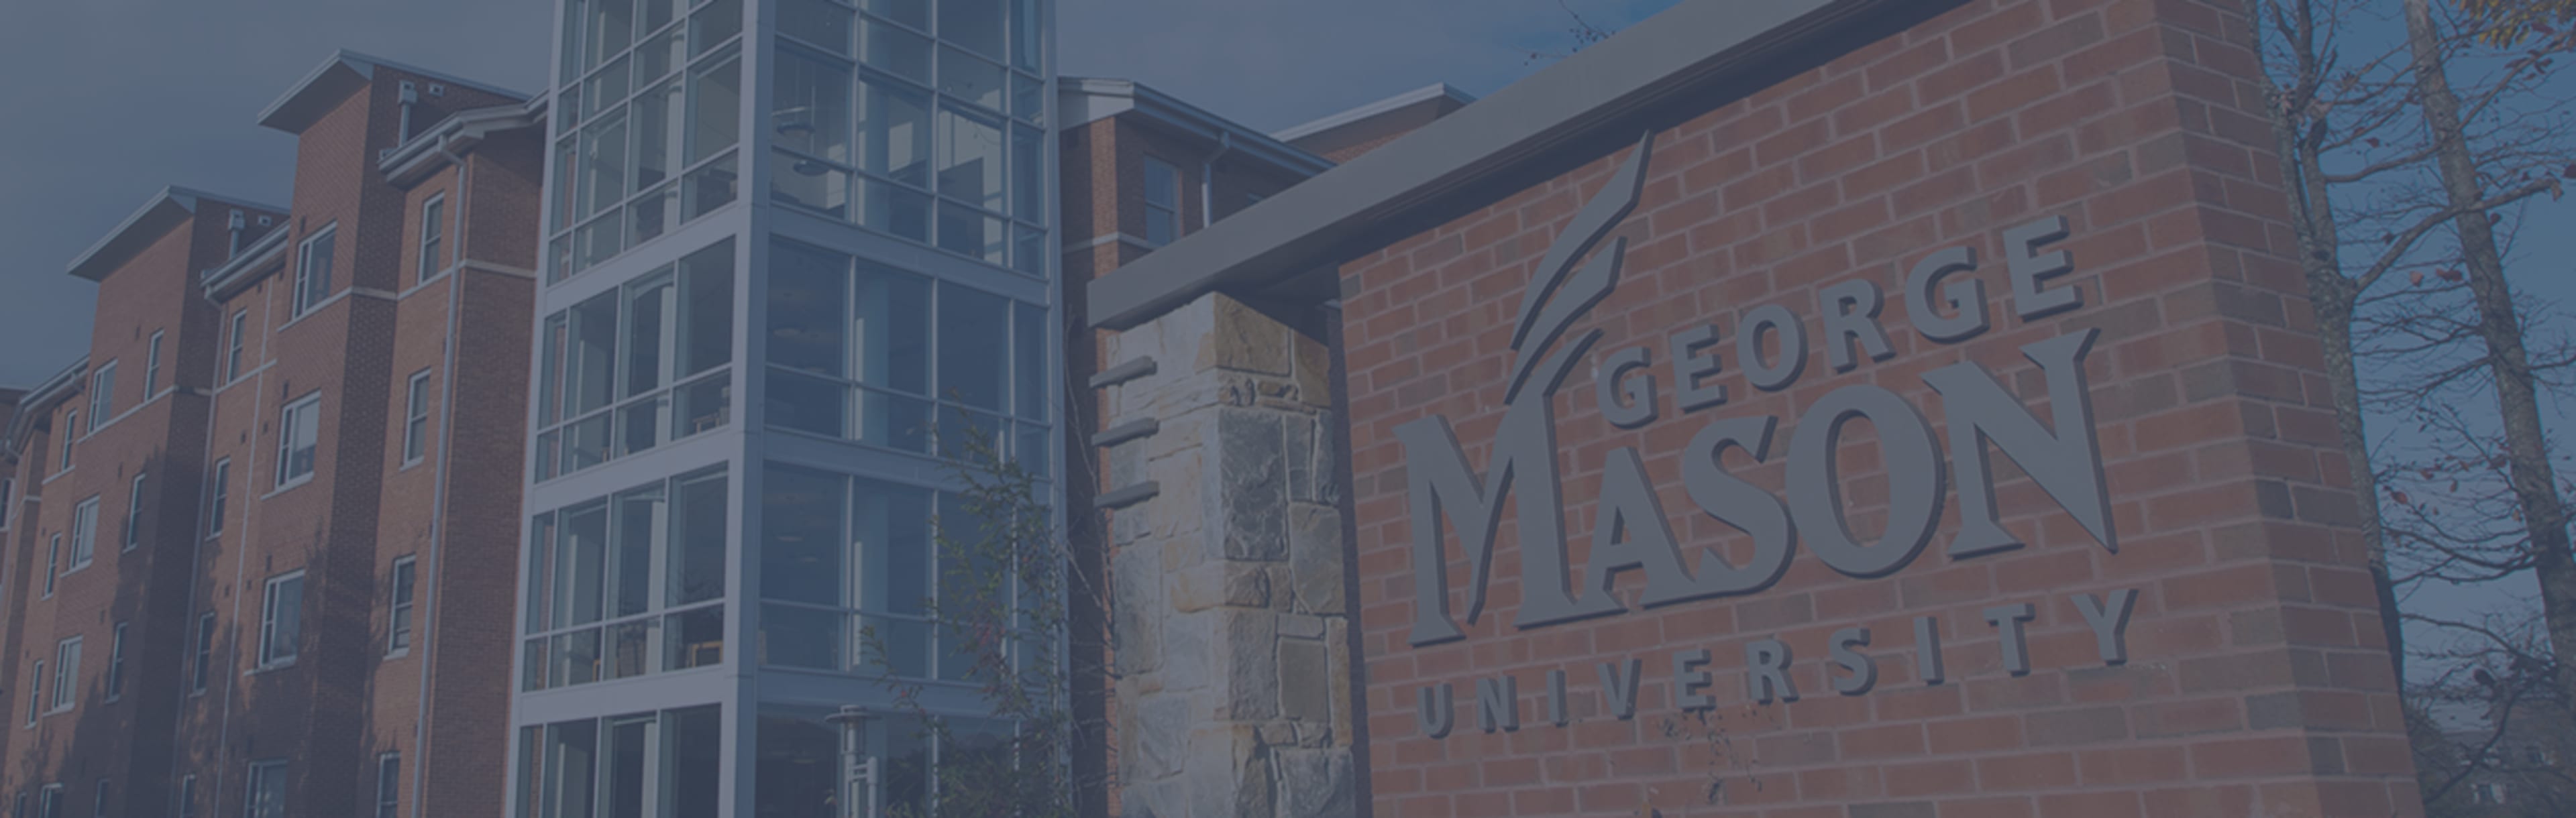 George Mason University Online MPS en Psicología Industrial y Organizacional Aplicada.